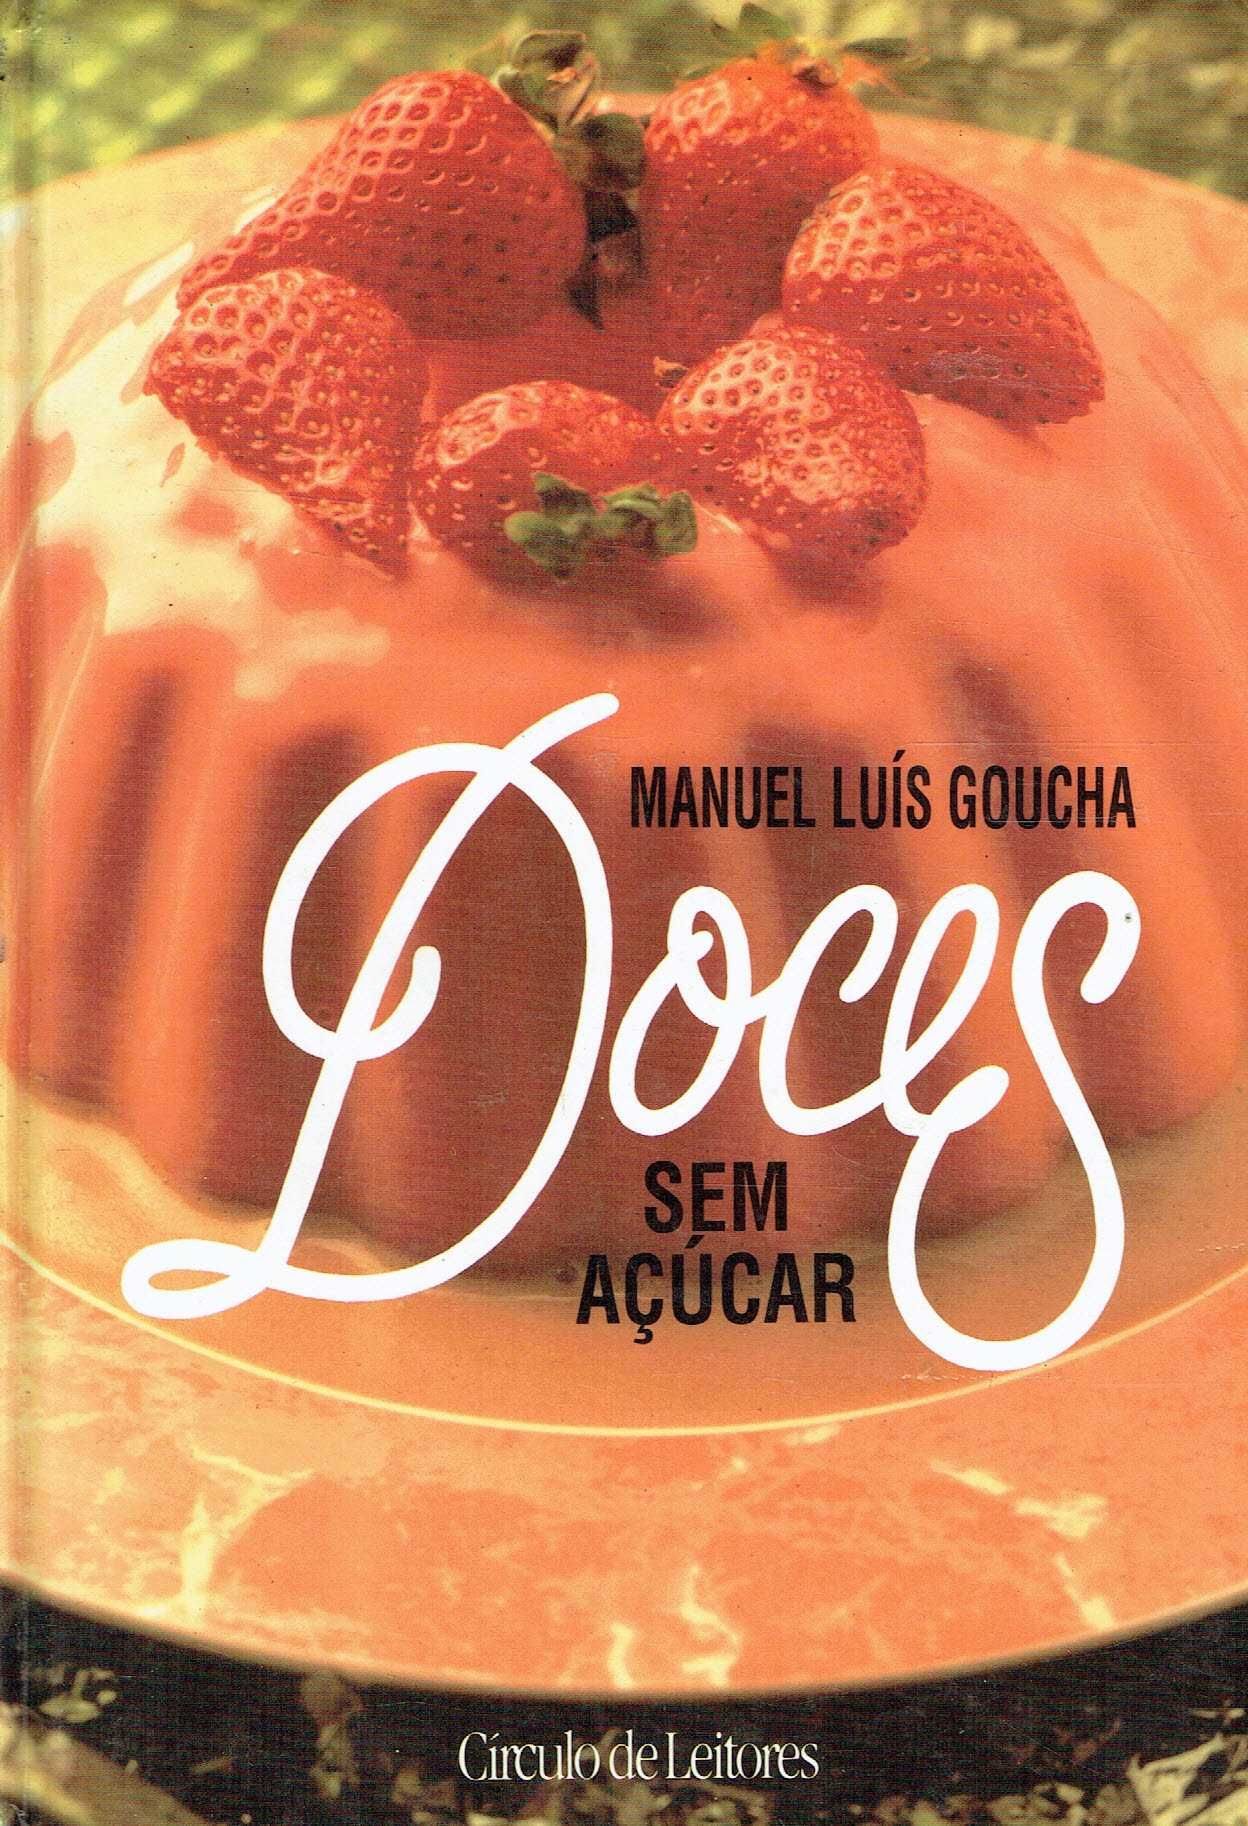 7465

Doces sem açúcar
Manuel Luís Goucha